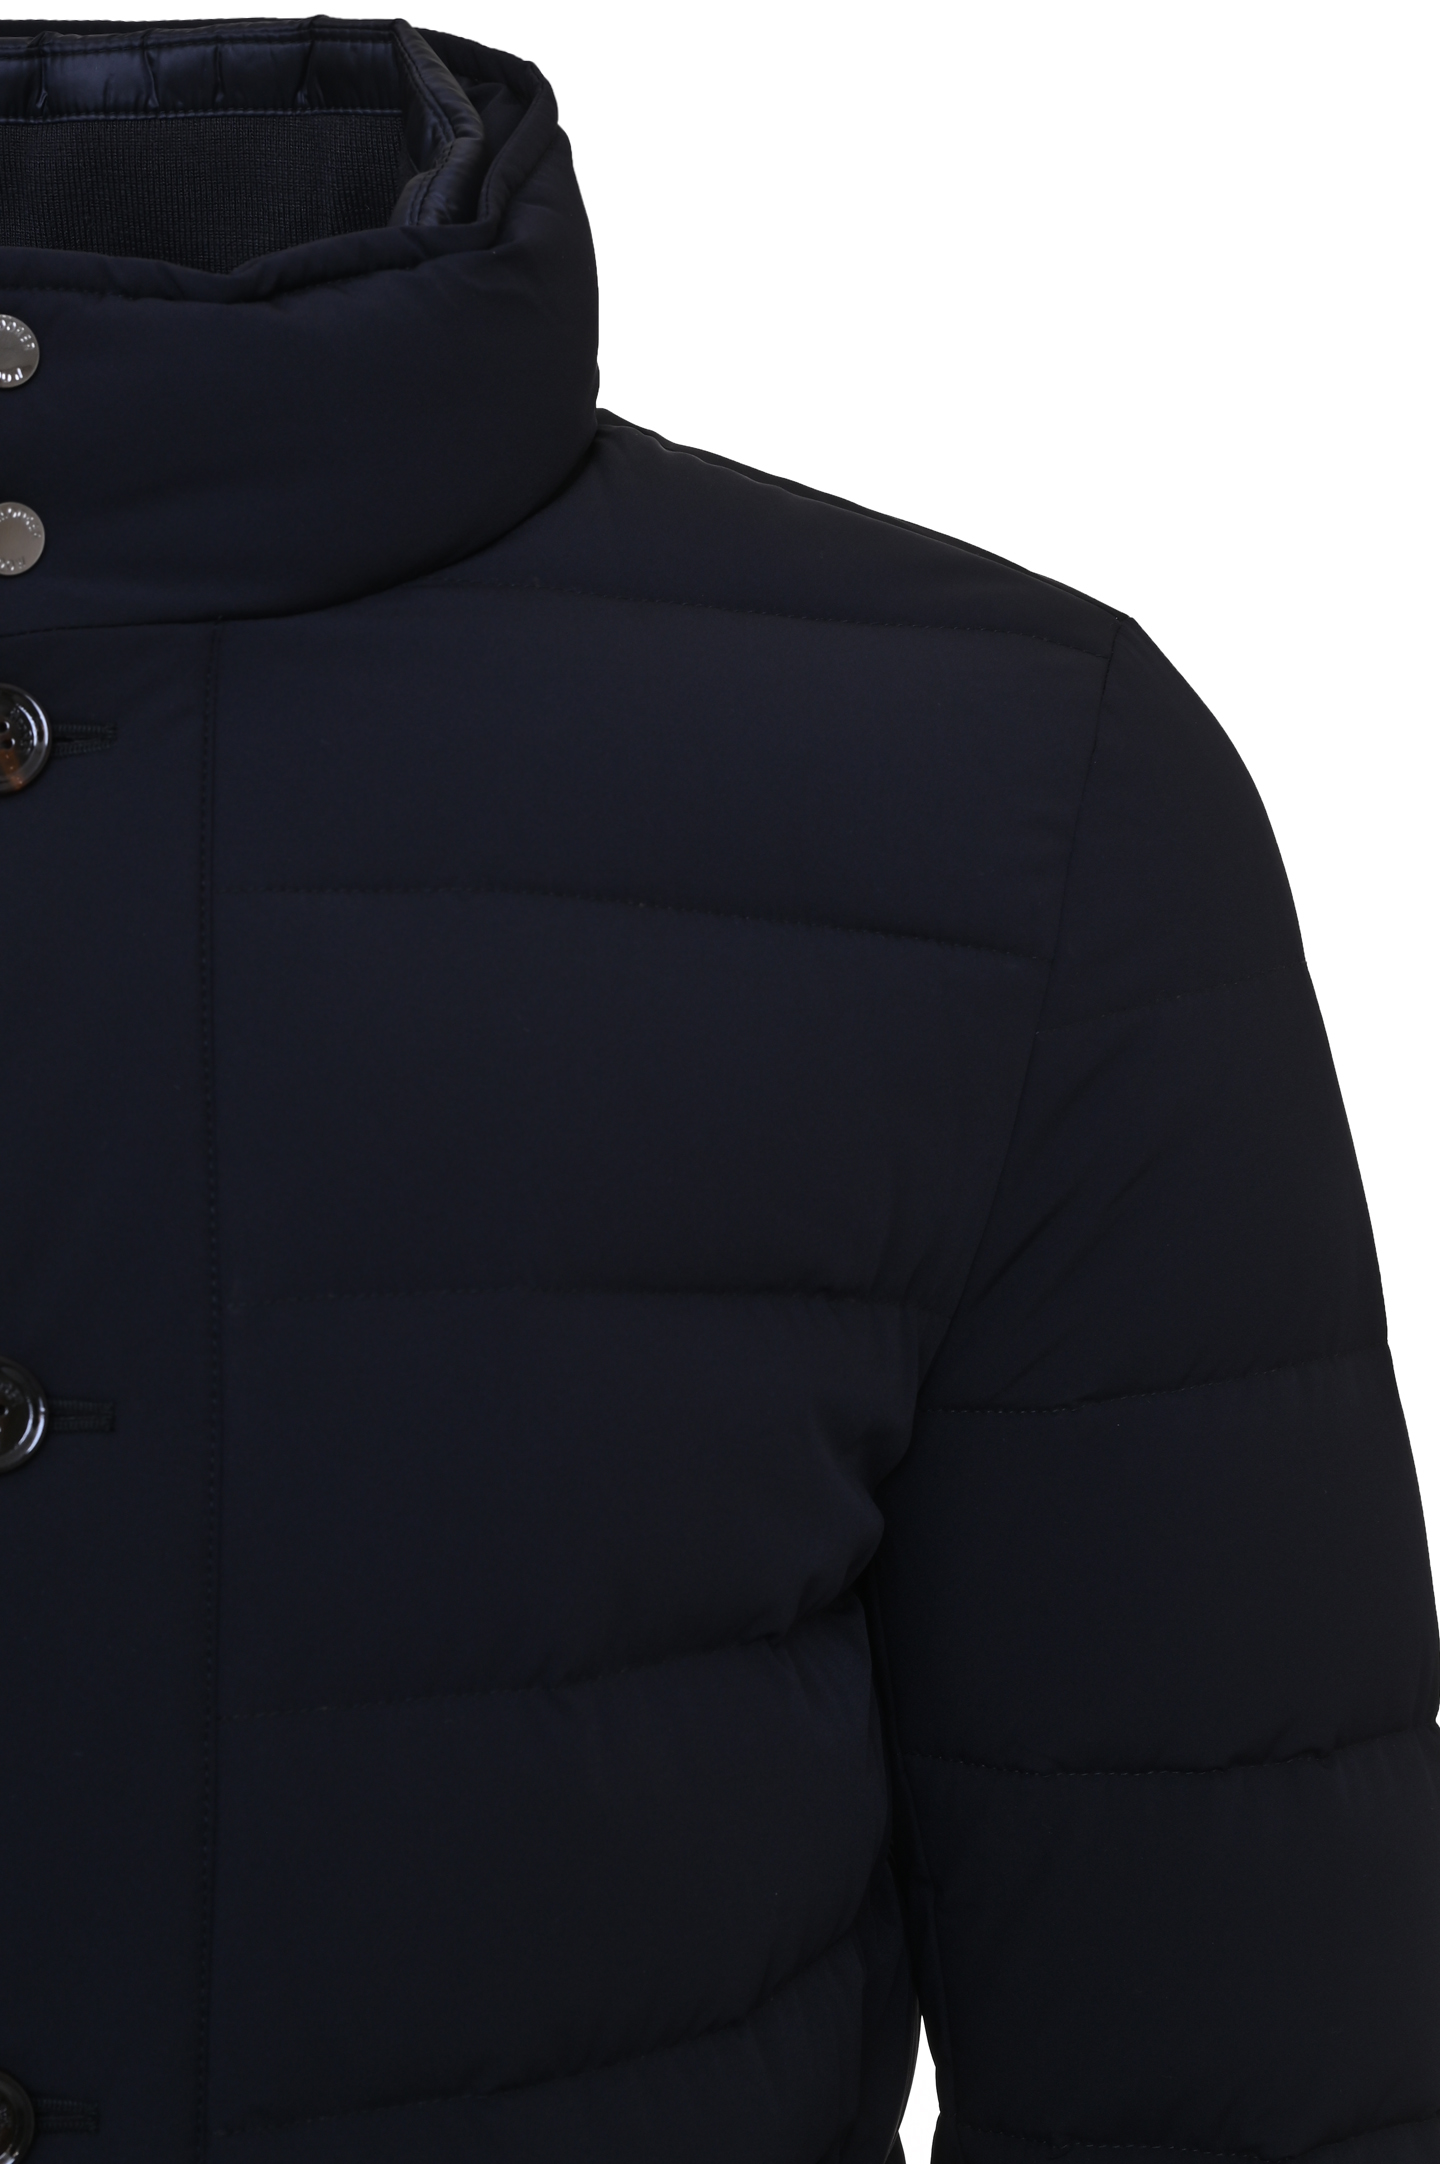 Куртка MOORER CALEGARI-KN, цвет: Черный, Мужской